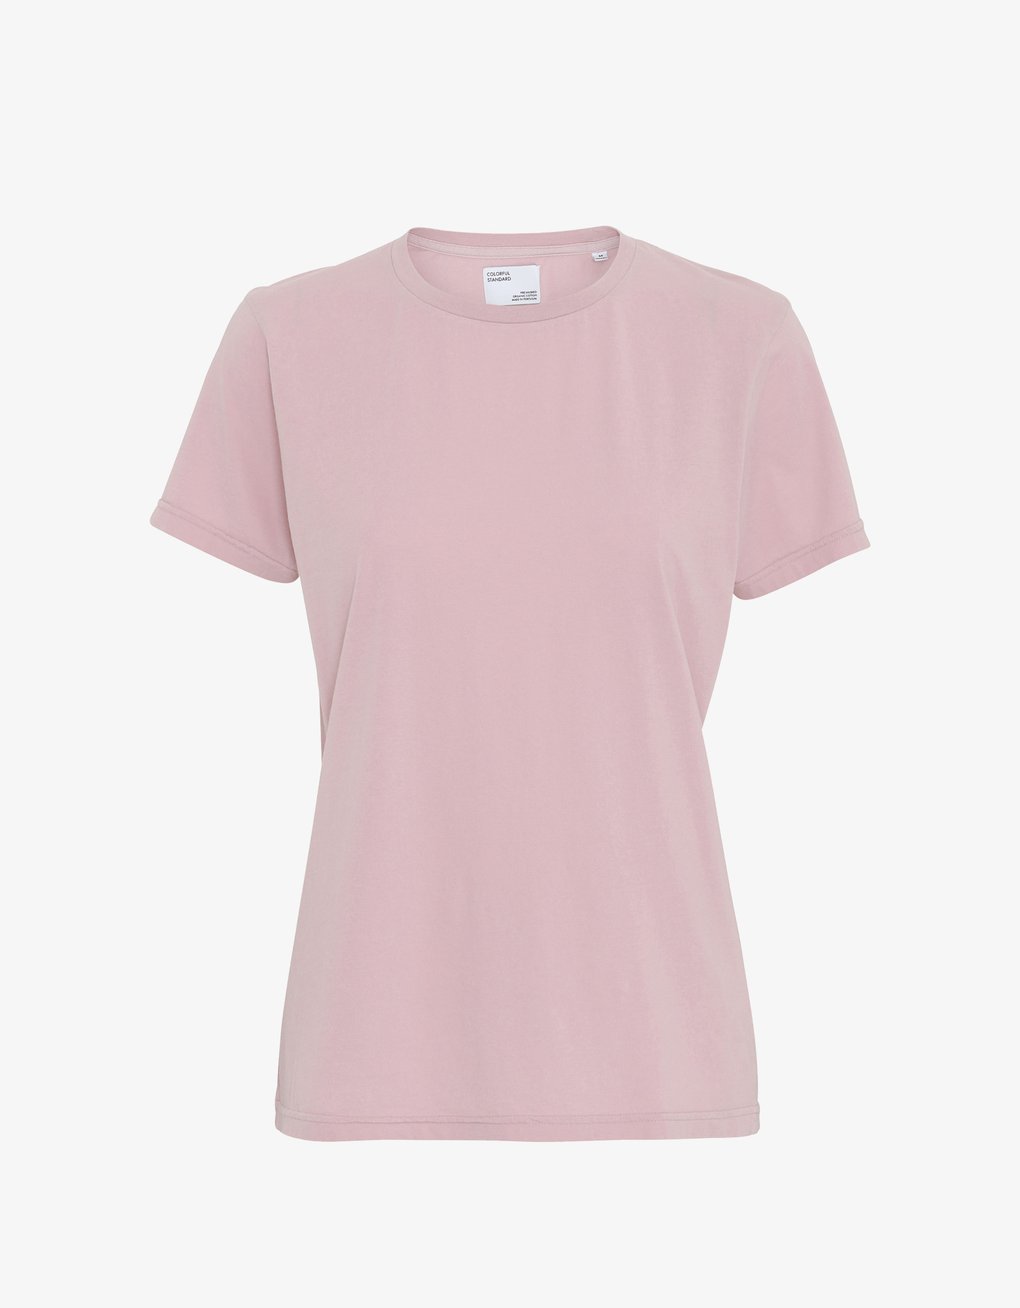 Camiseta Ligera de Mujer Orgánica Rosa - ECRU